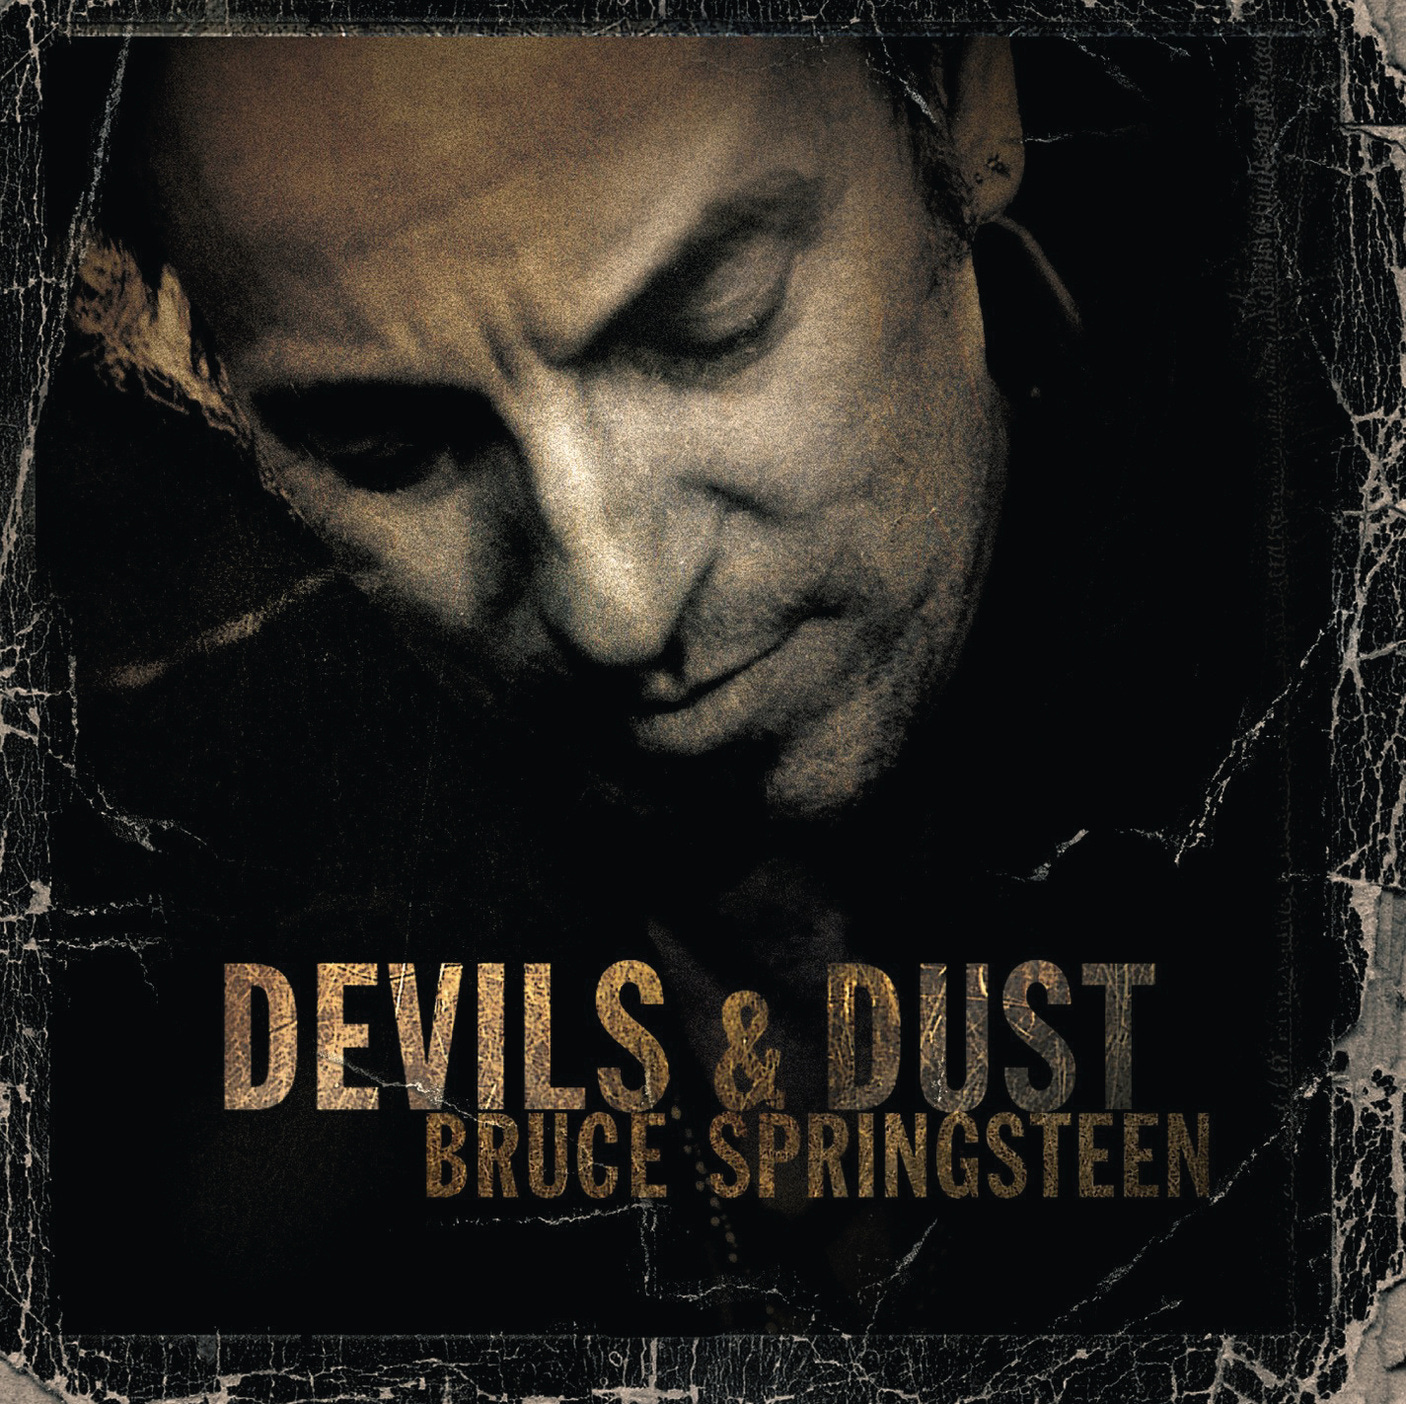 Devils & Dust - Bruce Springsteen - DCD - www.mymediawelt.de - Shop für CD, DVD, BLU-RAY, Filme ...